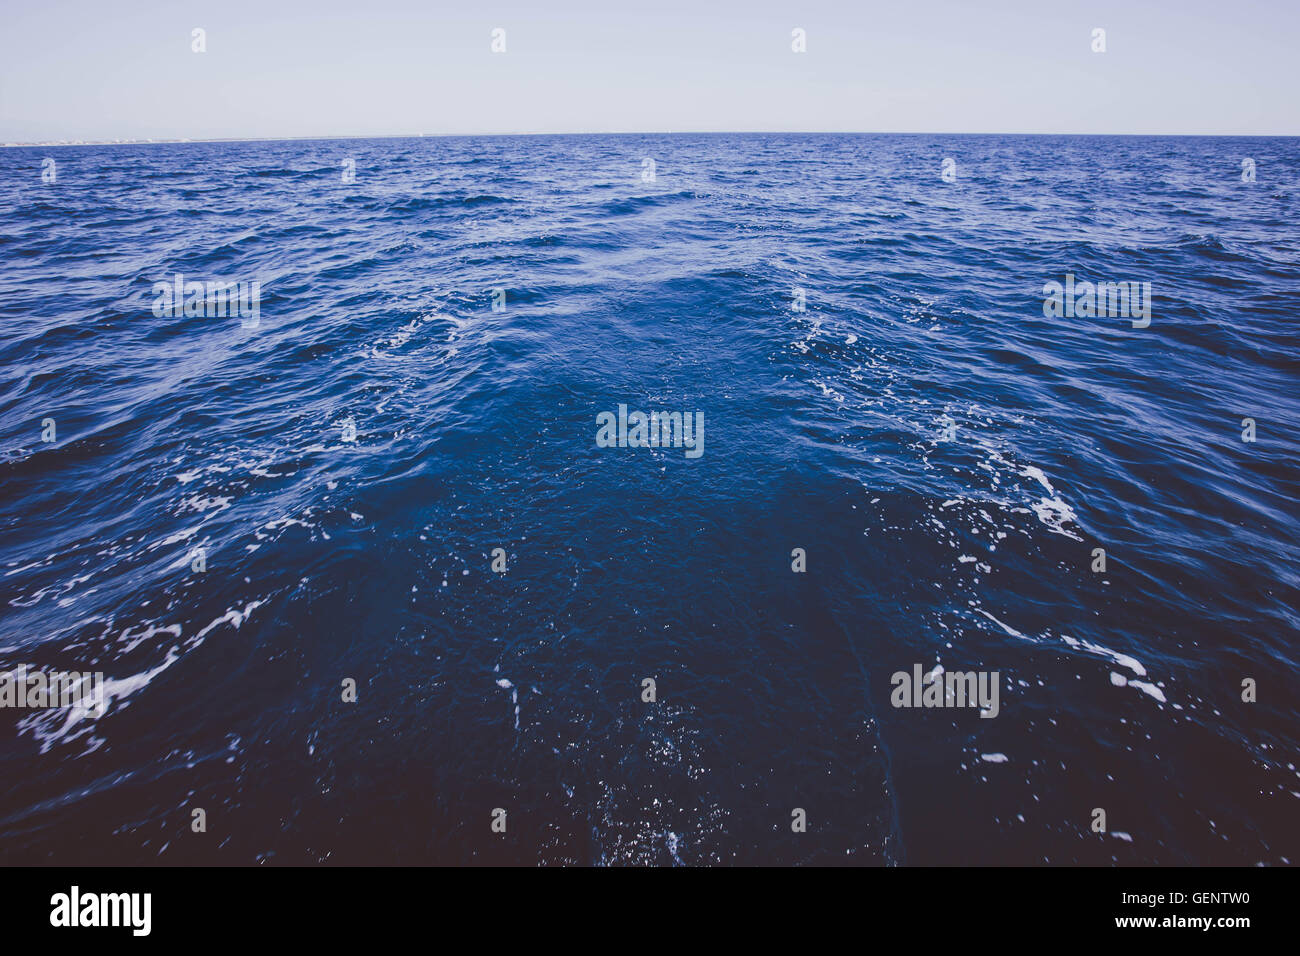 Horizonte del Mar con un barco de vela en la escena, el azul profundo del mar del Mediterráneo francés. Foto de stock